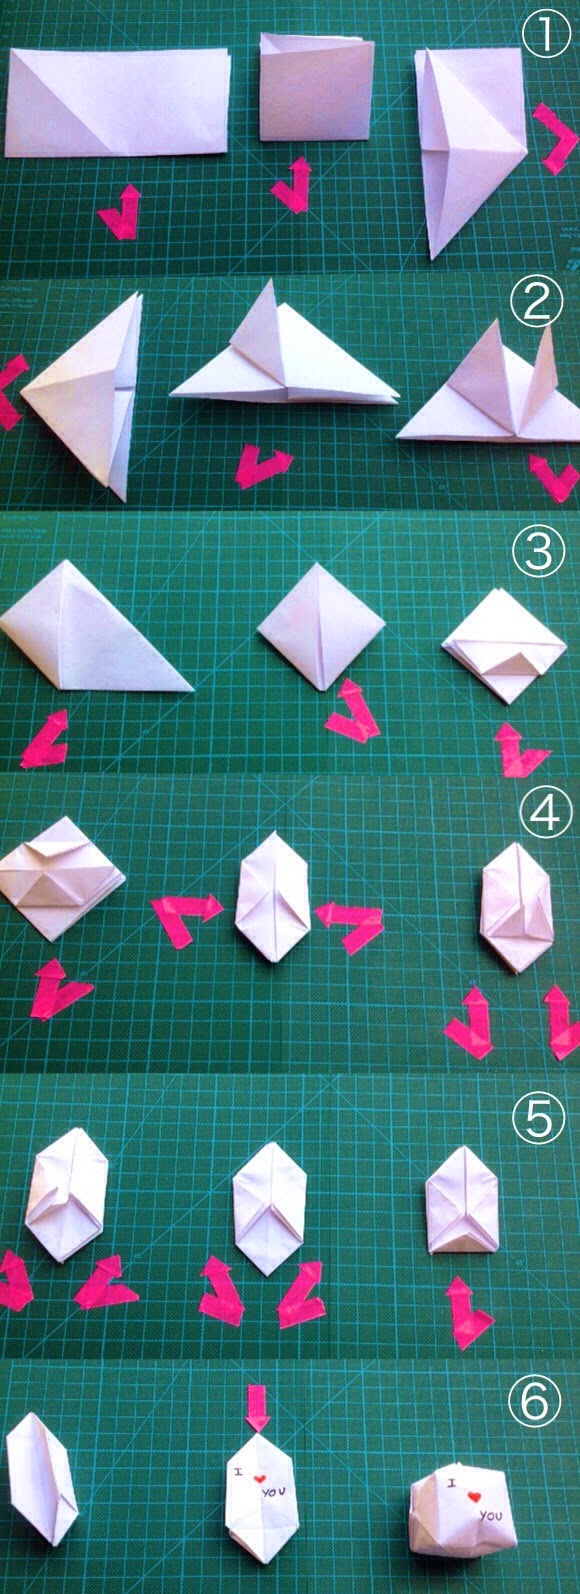 Carta Origami 15x15,per Fare Origami DIY Origami Carta,100pcs Cartoncino Colorato Doppia Faccia Fogli Colorati,Folded Square Origami 